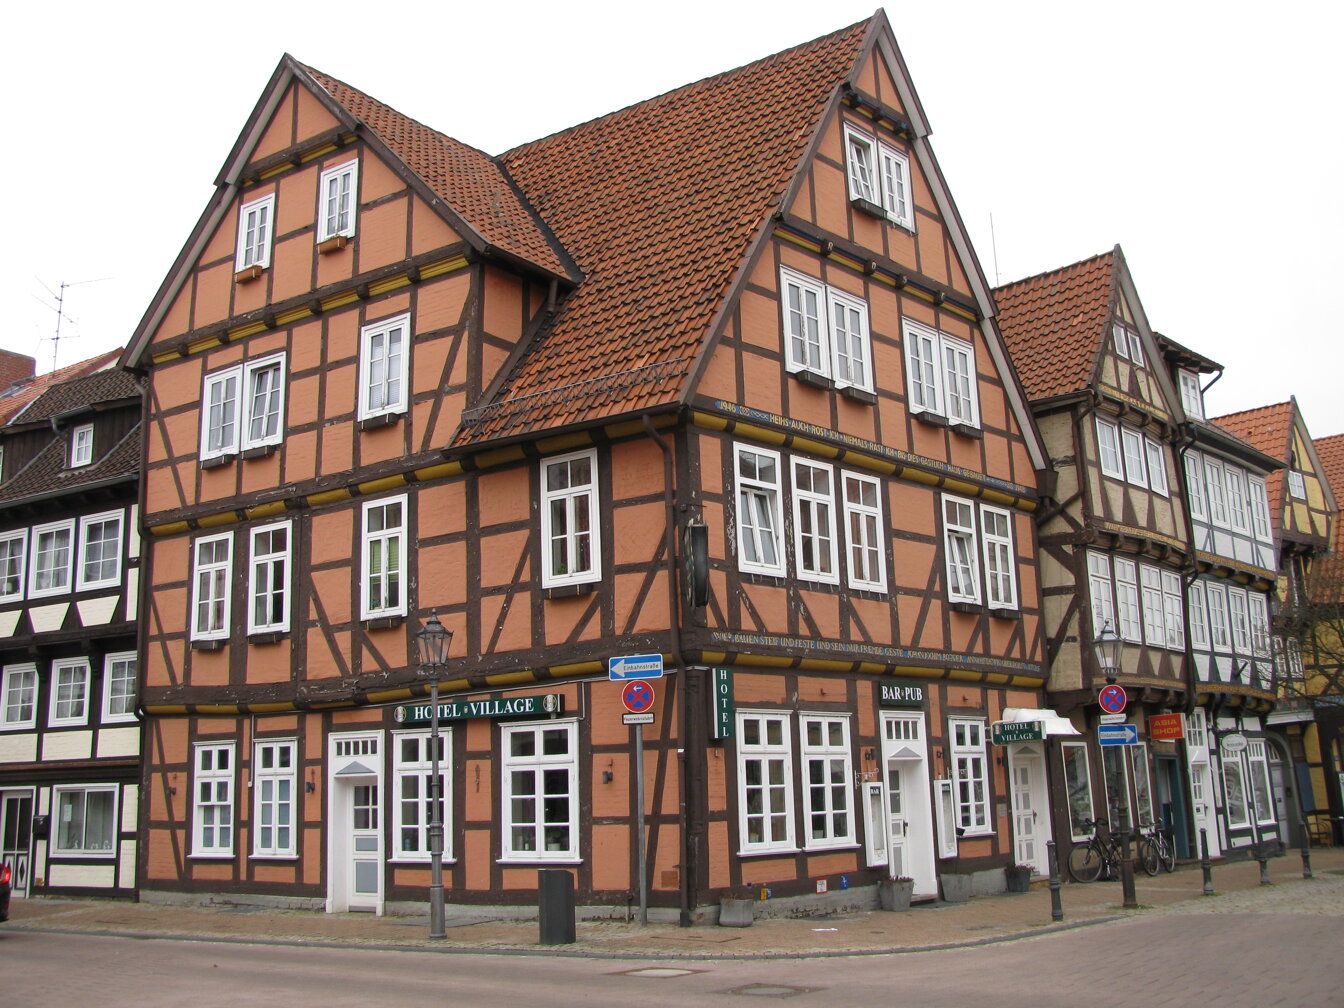 Bild der Stadt Celle